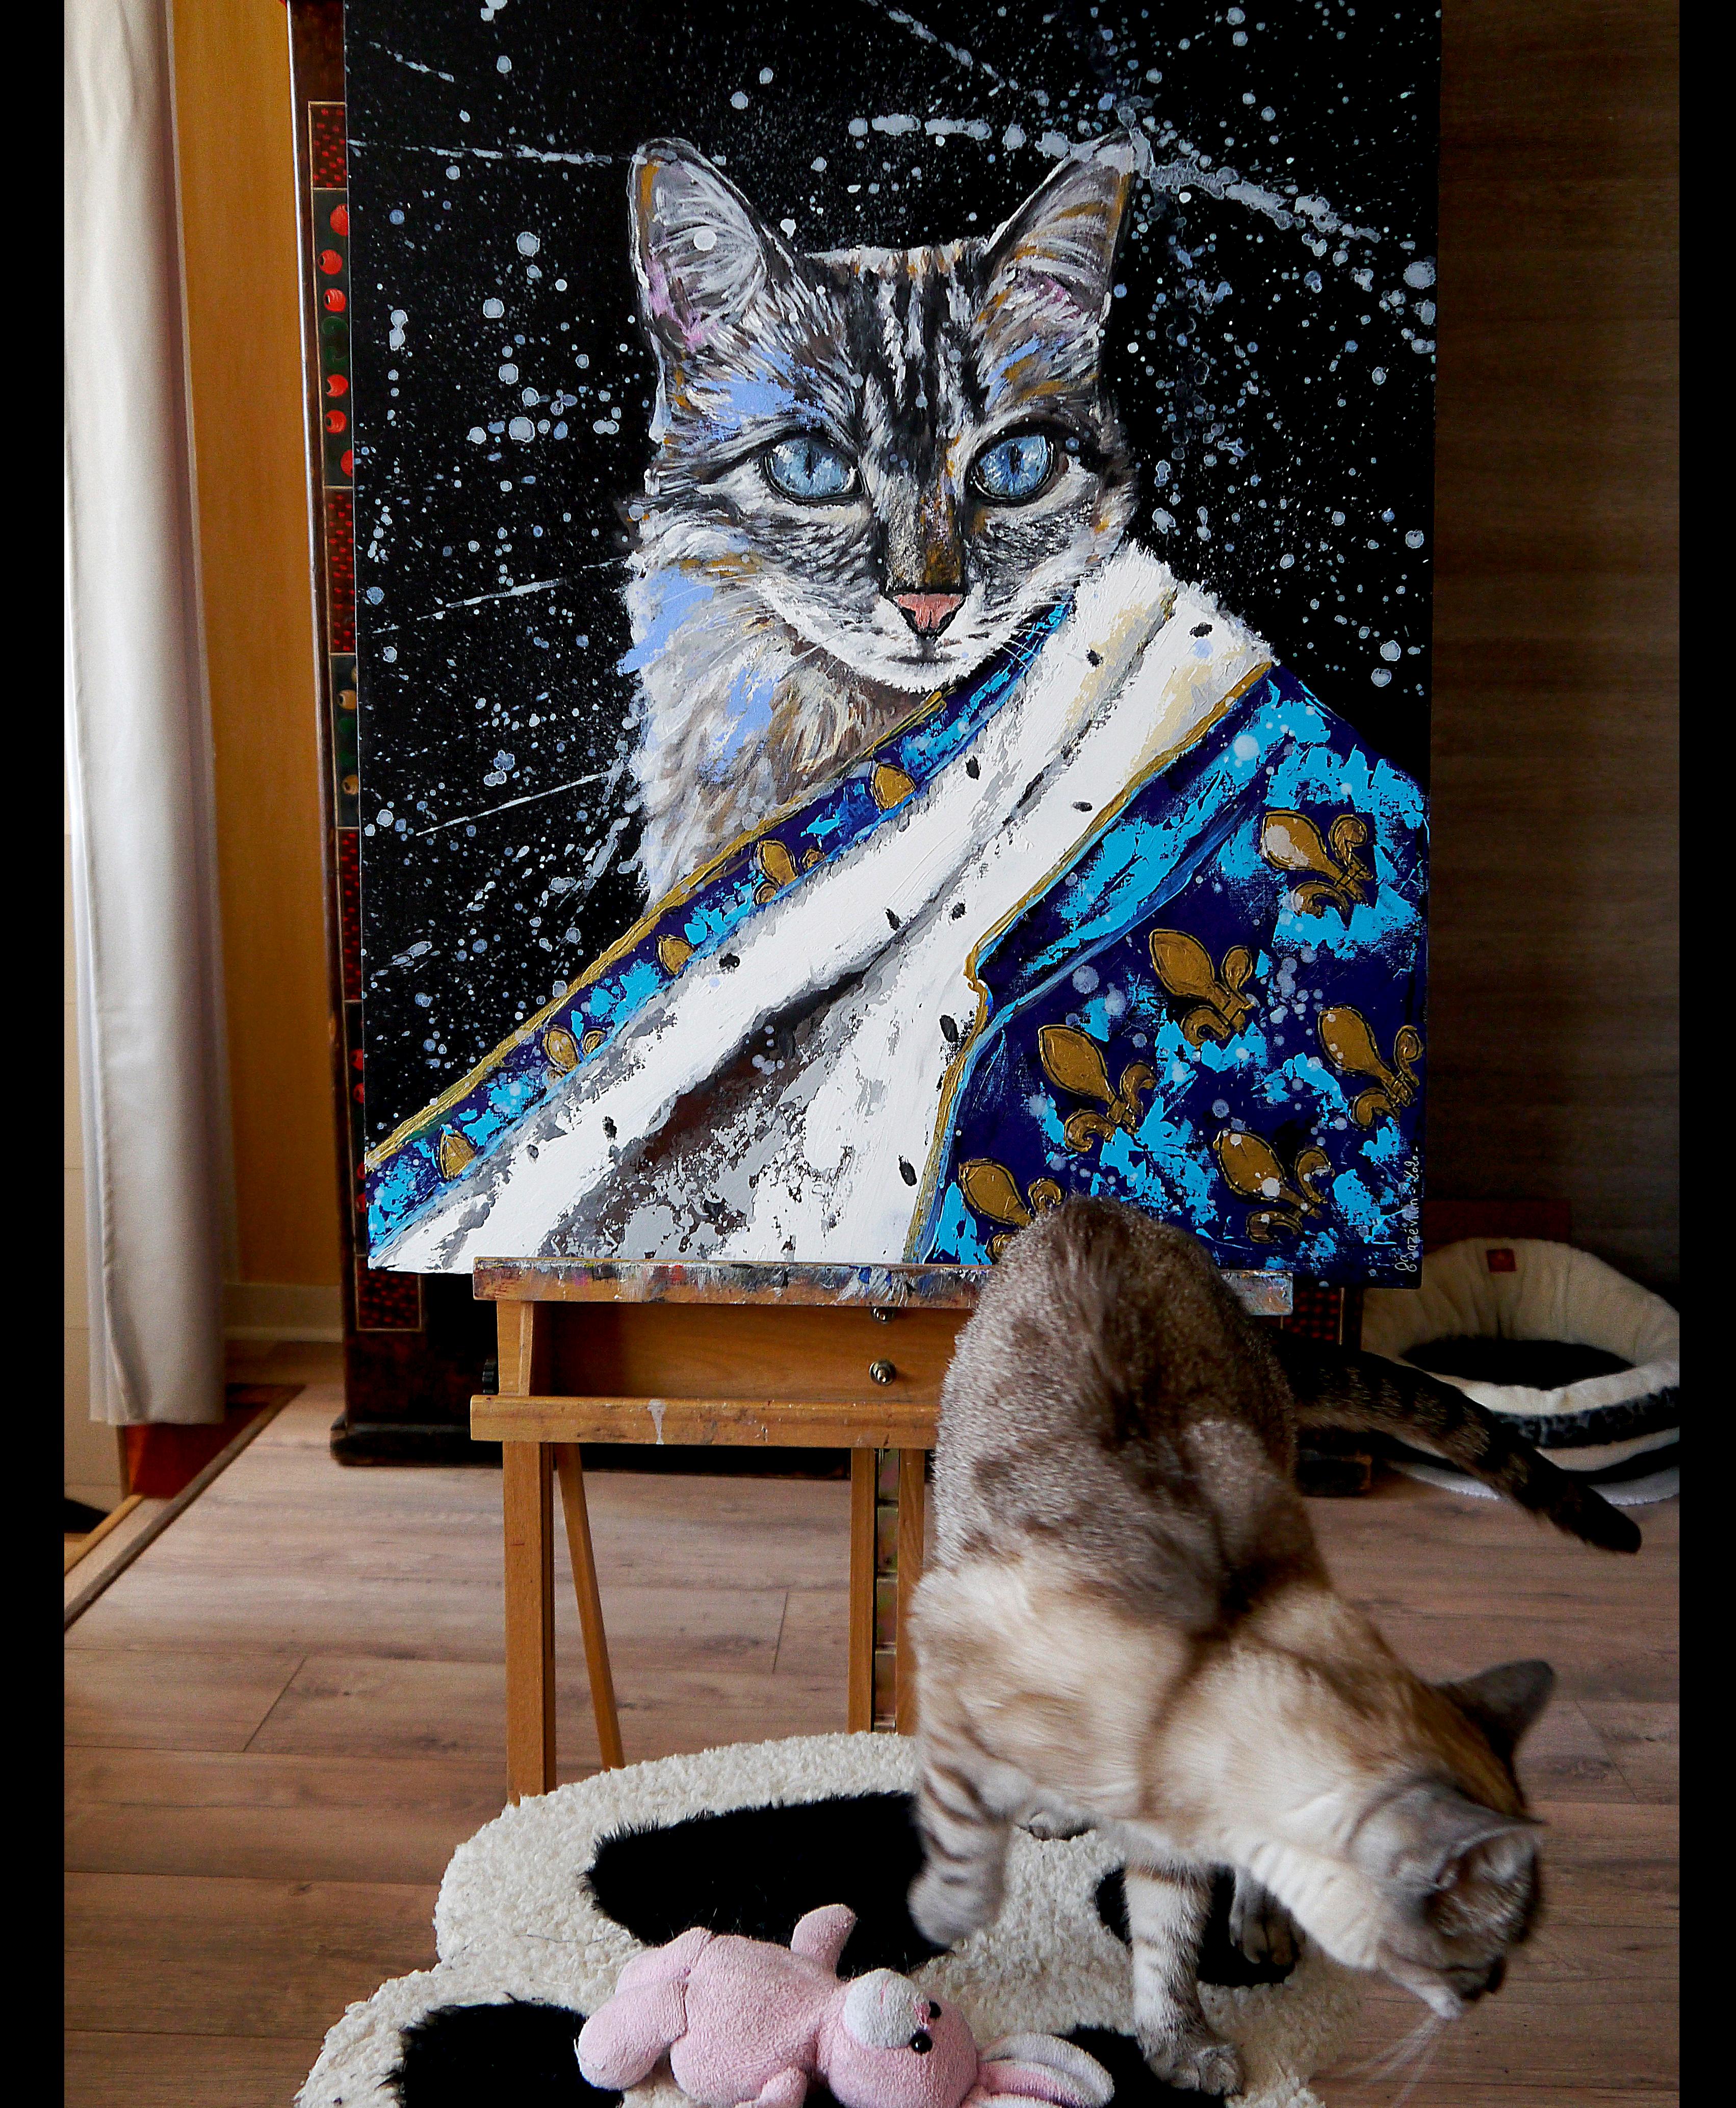 Portrait Royal Meoxit Katze

Nahaufnahme einer Katze mit königlichem Mantel, gemalt während des Brexit
Technik: Öl, Acryl und Tinte  auf Leinwand F20 73x60cm ■■ 28,7x23,6 inch

》》R E A D Y -- T O -- H A N G《《


❶ → Original signiertes Werk. Mit